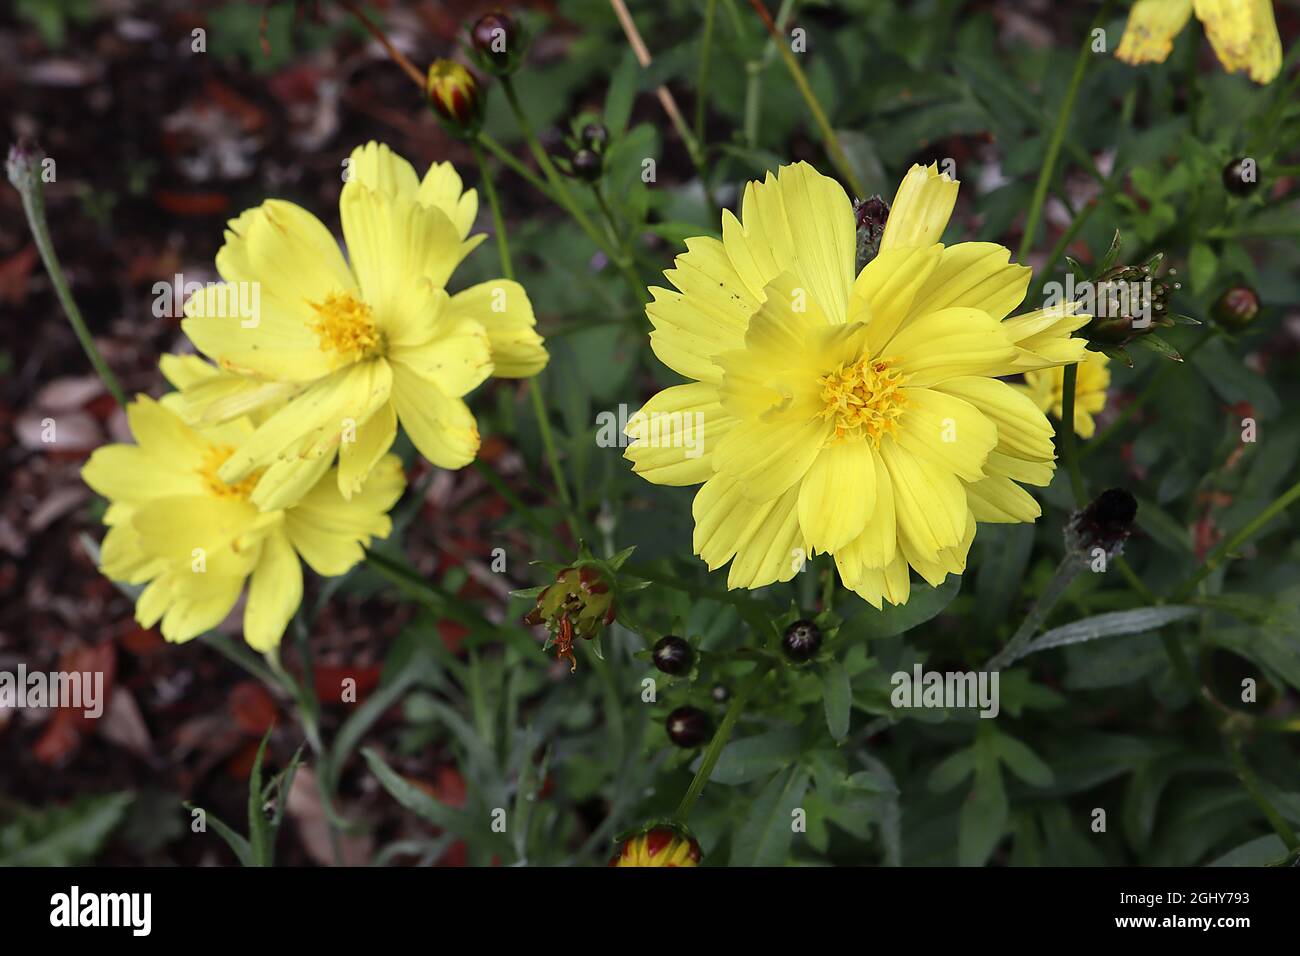 Cosmos sulfureus ‘Brightness Mixed’ Schwefelkosmos Brightness Mixed - halbdoppelte gelbe Blüten und dunkelgrüne tief gelappte Blätter, August, England Stockfoto